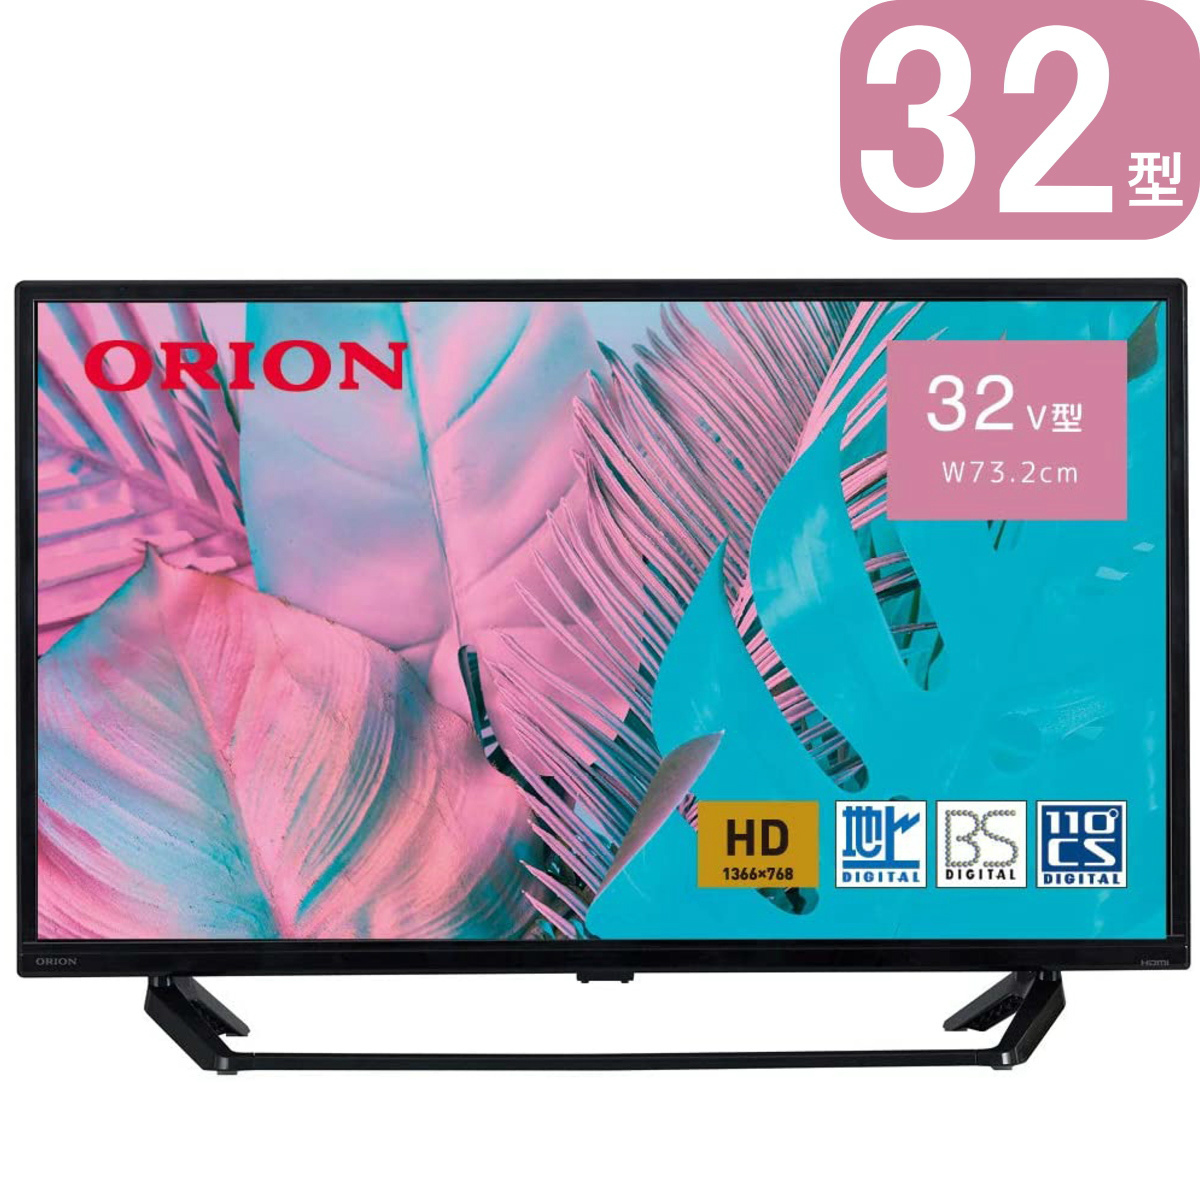 ORION 32型 ハイビジョン液晶テレビ | OL32WD300 | 裏番組録画機能 3波